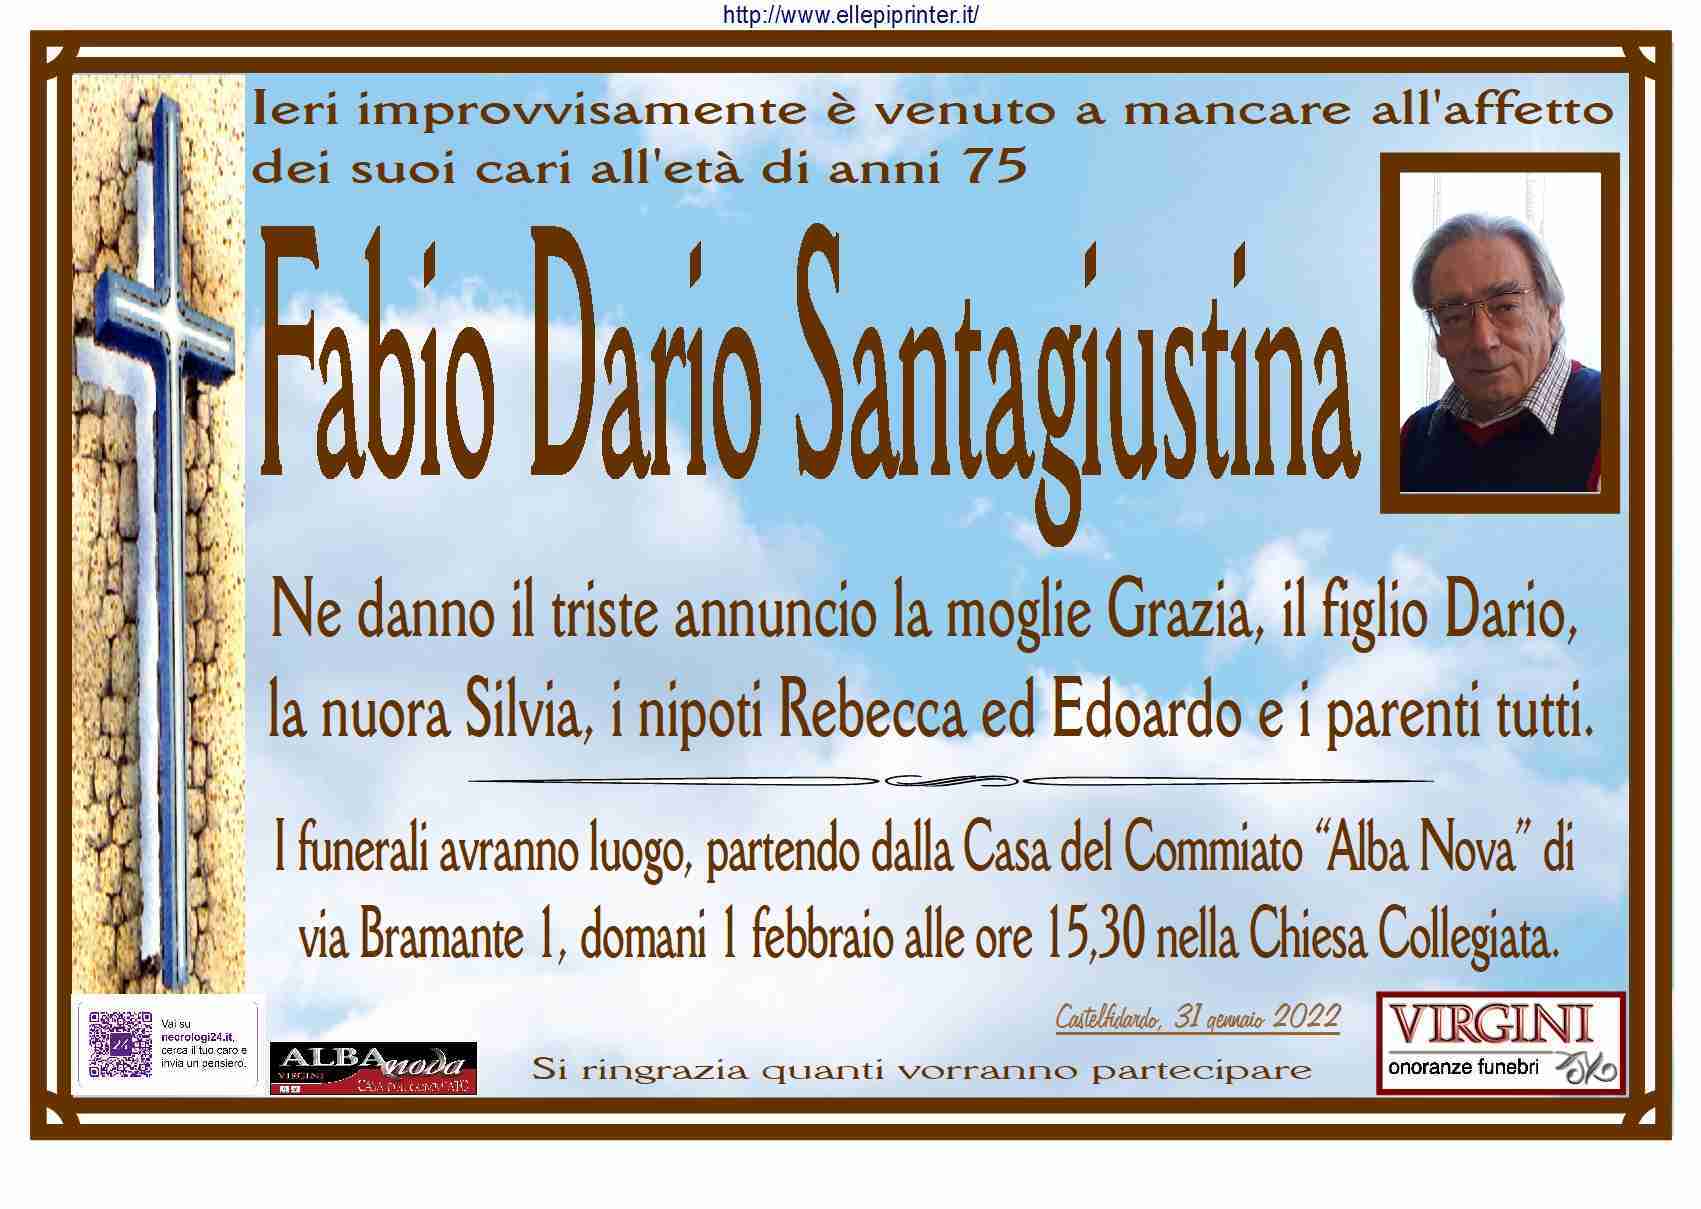 Fabio Dario Santagiustina